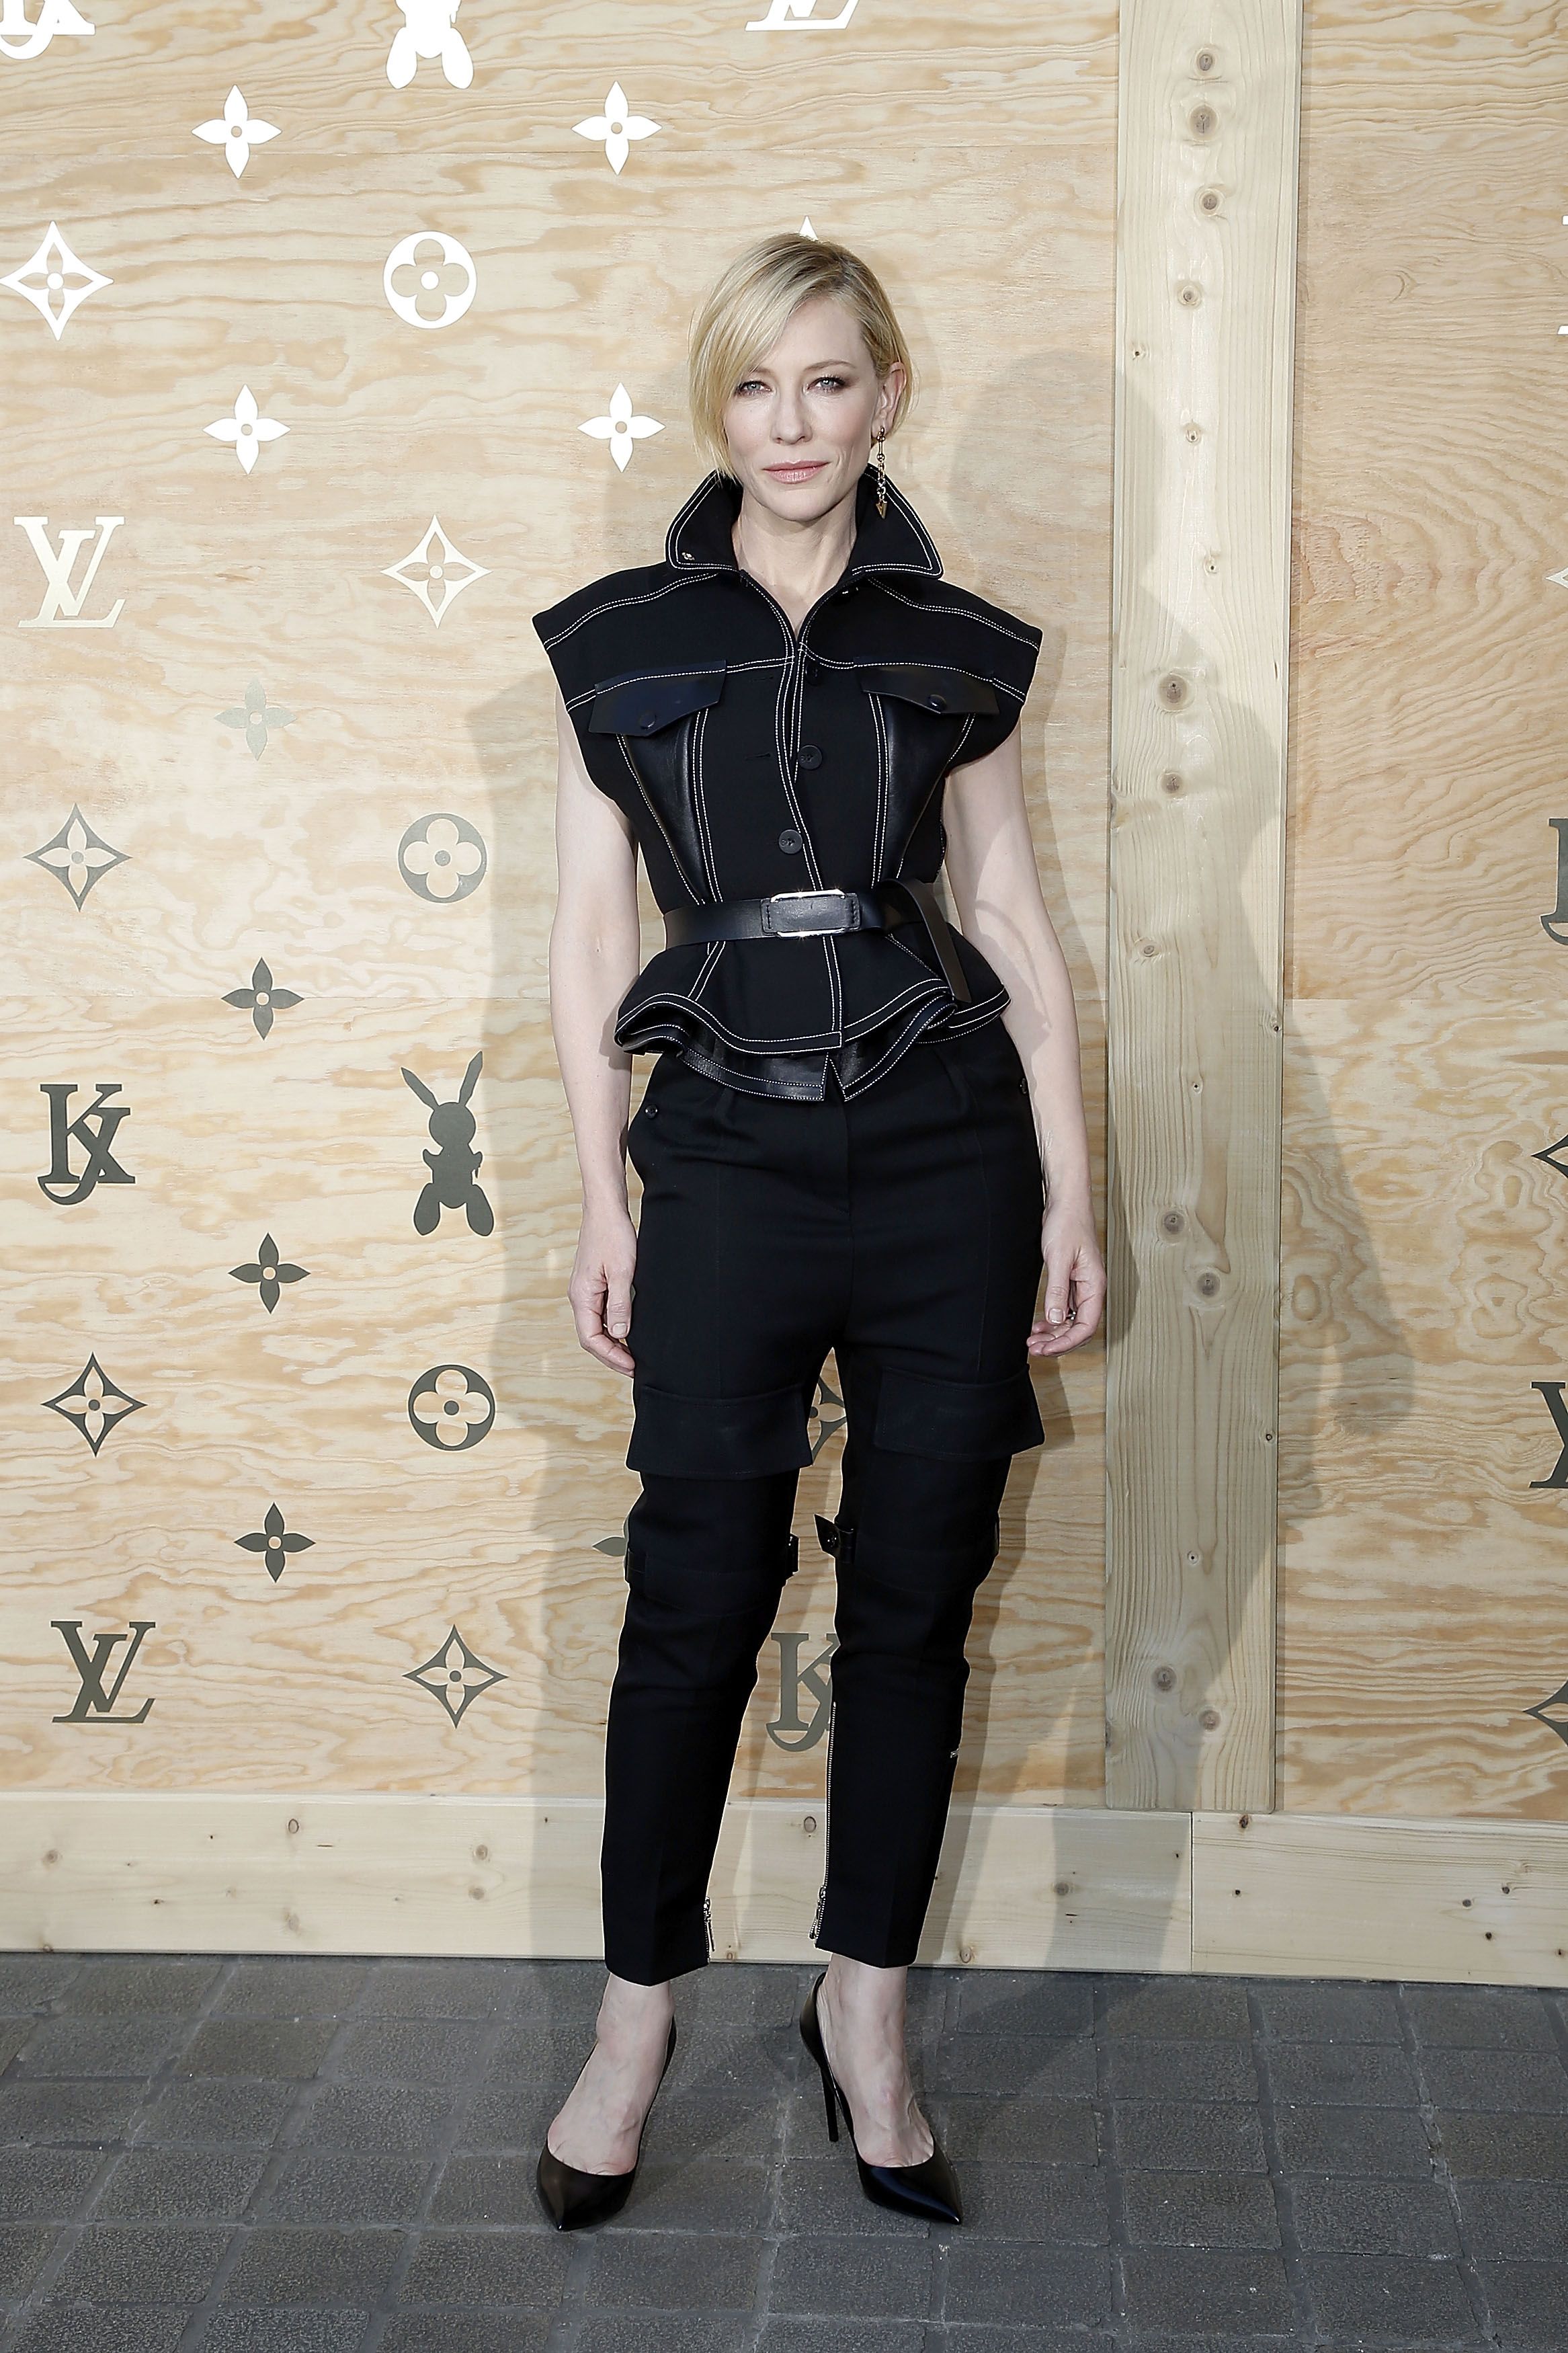 PICS] Louis Vuitton Celebrates Jeff Koons Launch — Red Carpet PICS